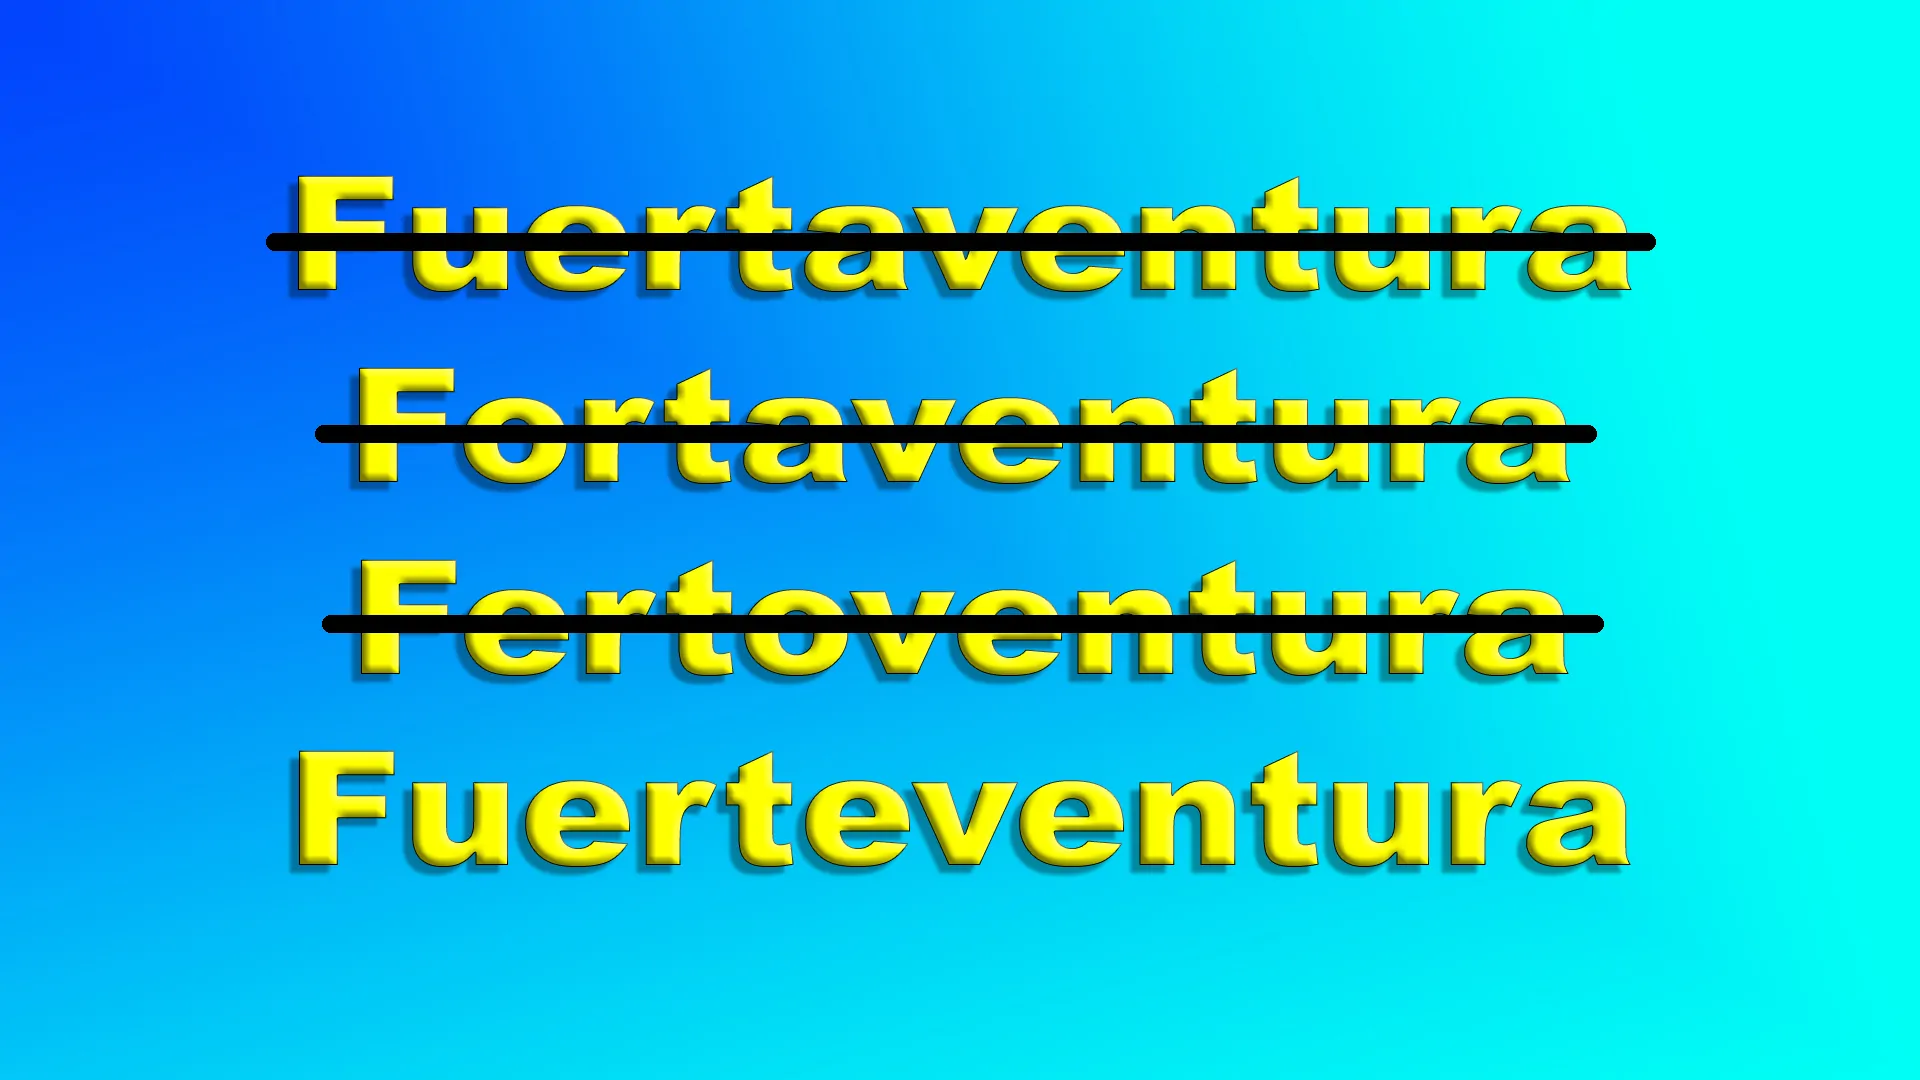 How to spell Fuerteventura!